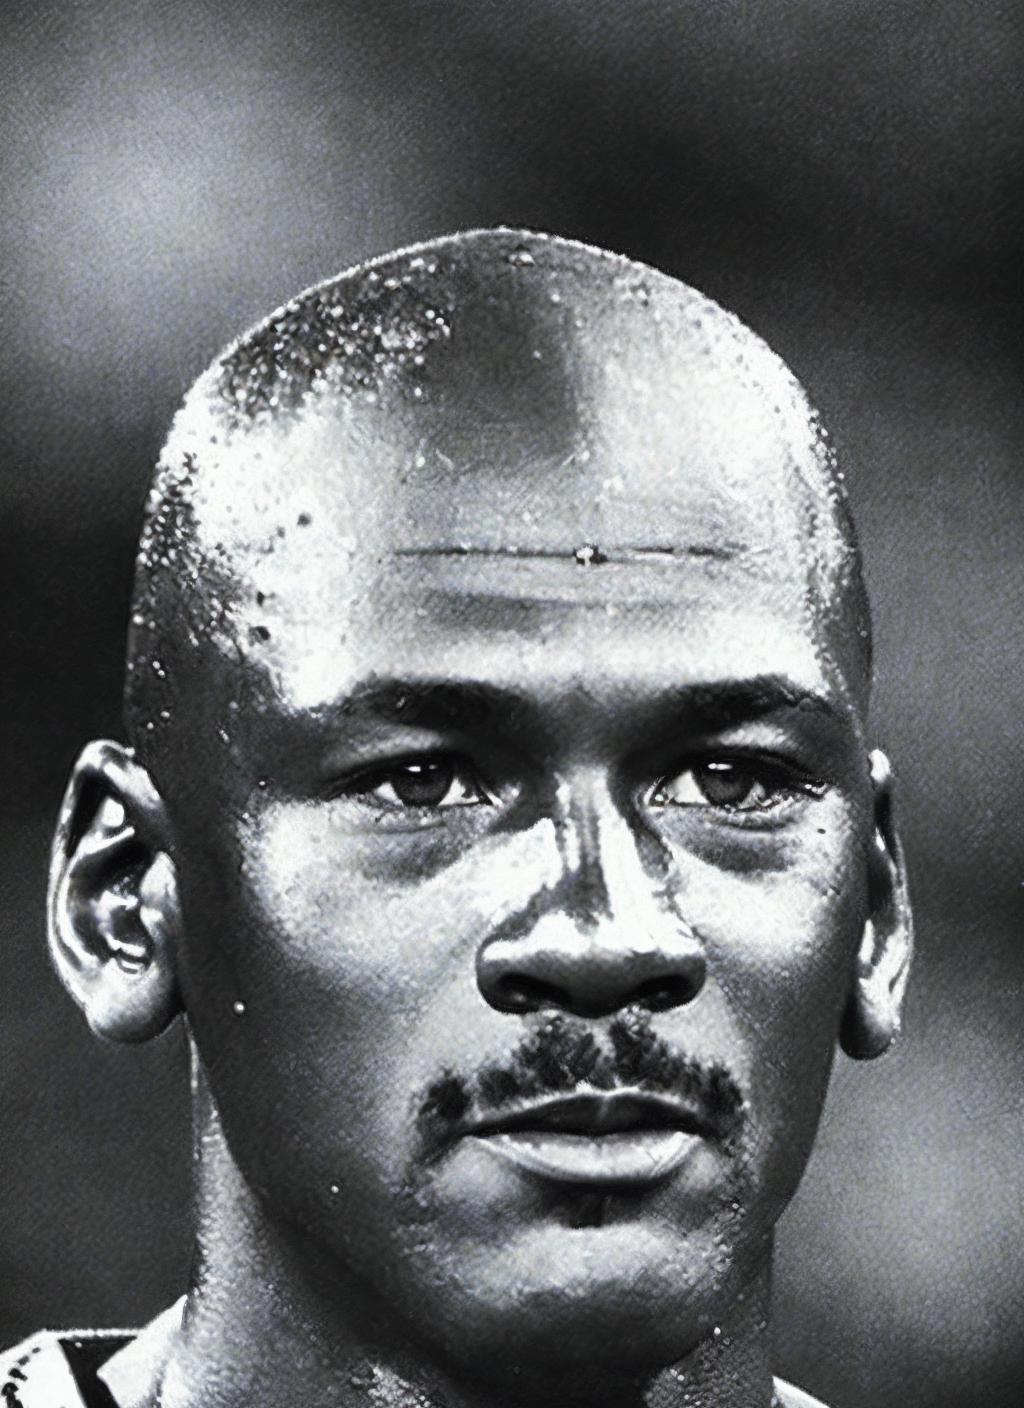 Michael Jordan image by malcolmrey